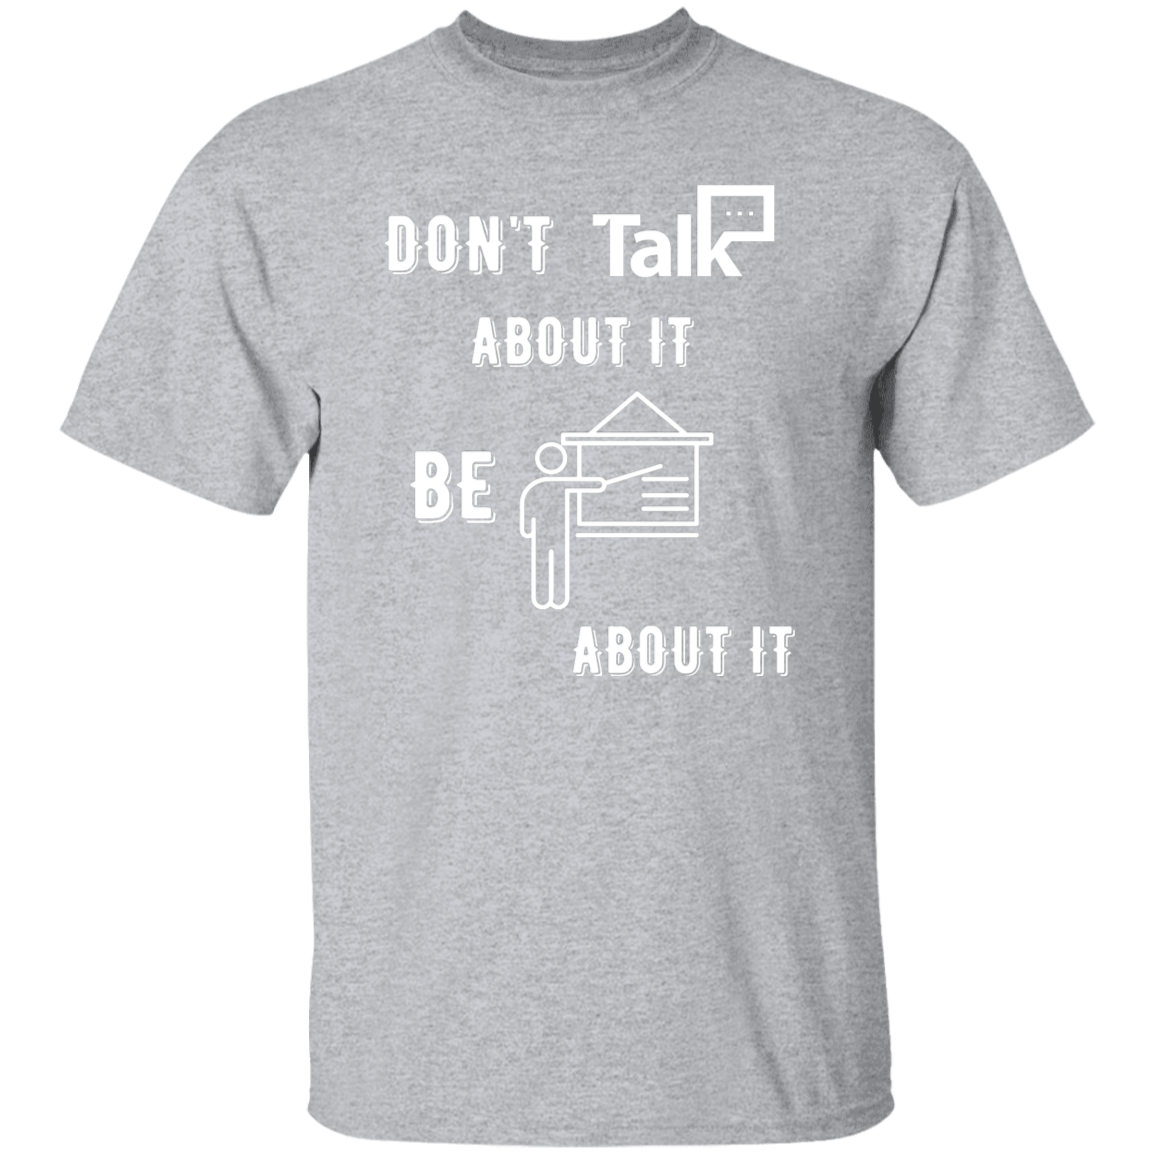 Don't Talk About It - Teacher Short Sleeve Shirt